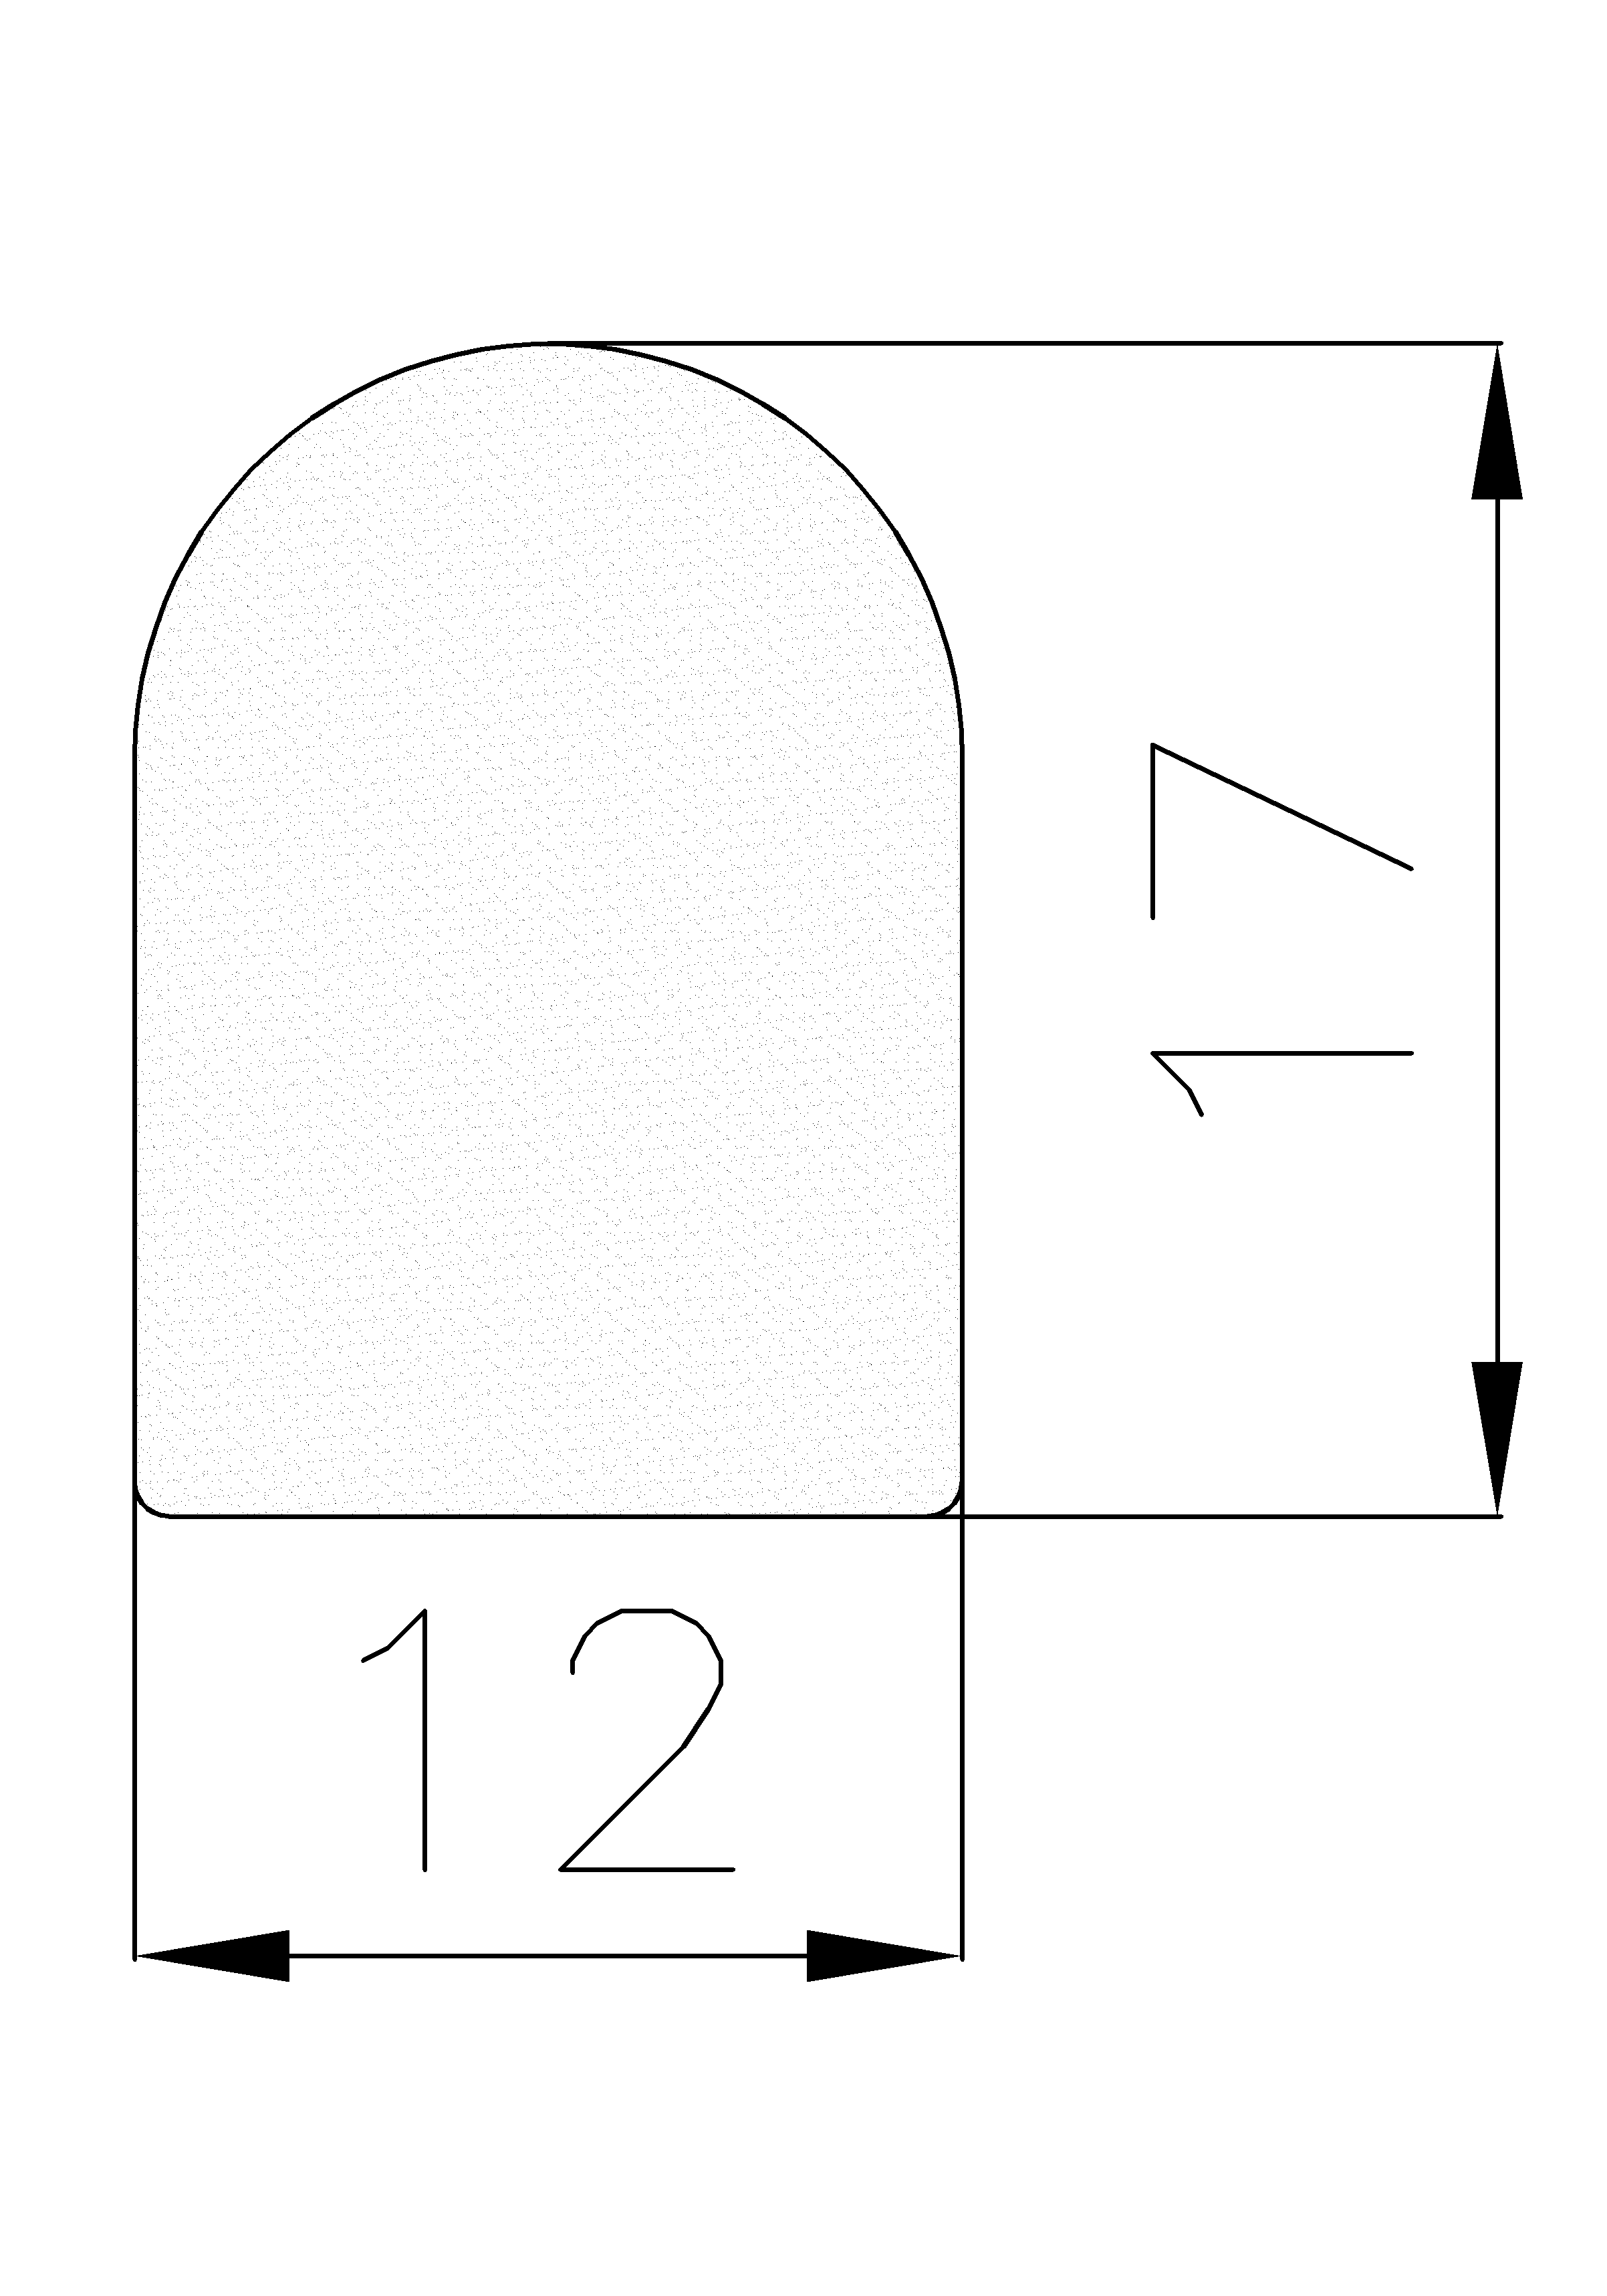 7870403KG - EPDM szivacs gumiprofilok - Félkör alakú, D-profilok